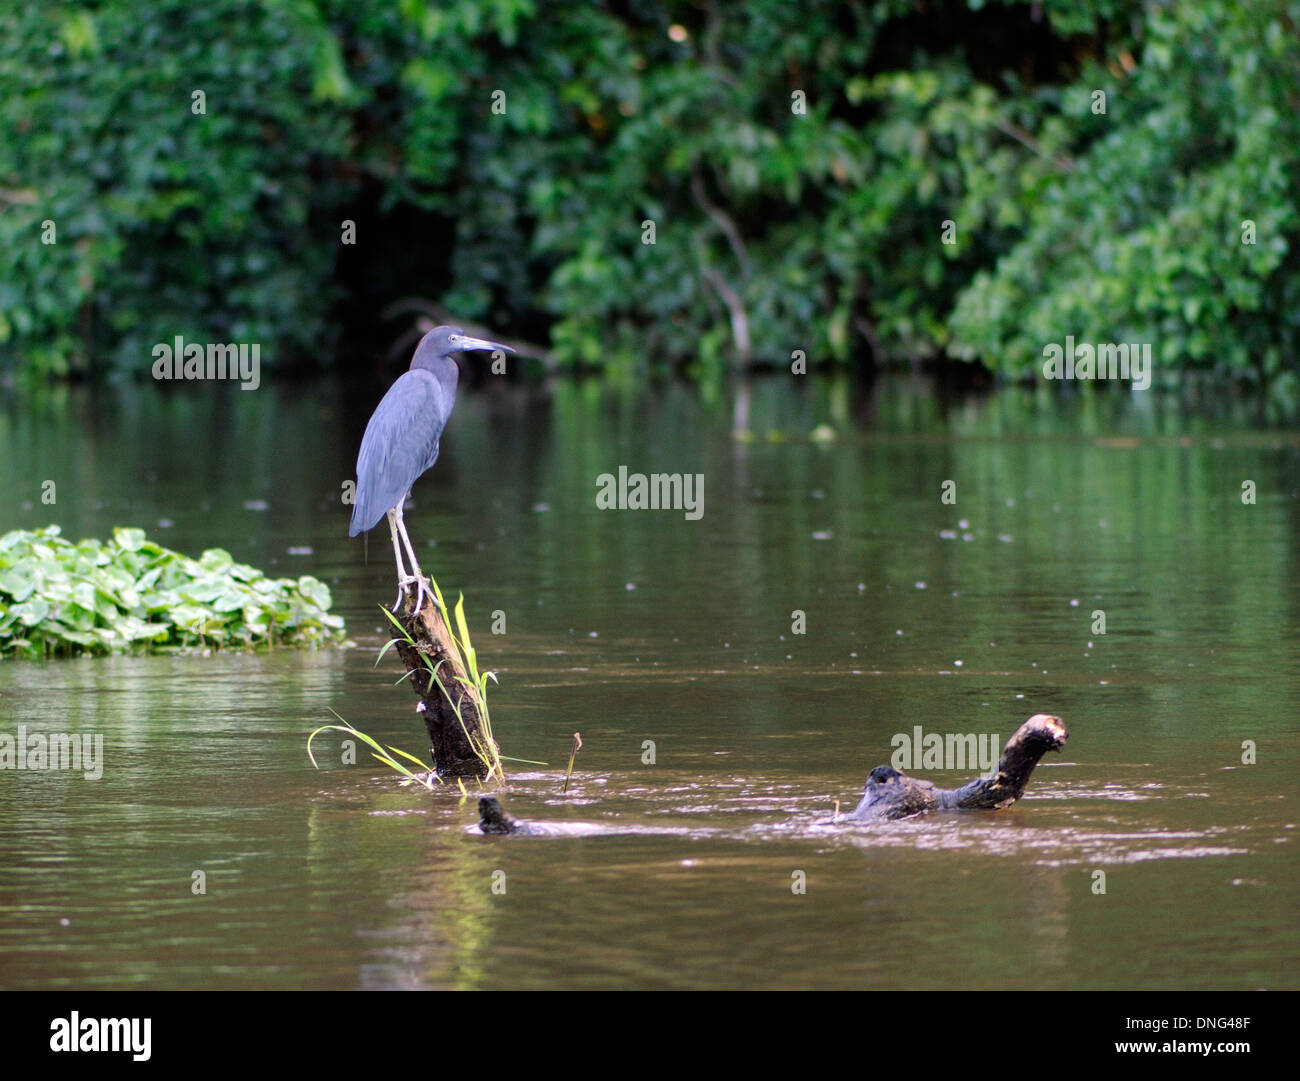 Un little blue heron (Egretta caerulea) est perché sur un journal dans la rivière de Tortuguero. Parc National de Tortuguero, province de Limón, Costa Rica. Banque D'Images